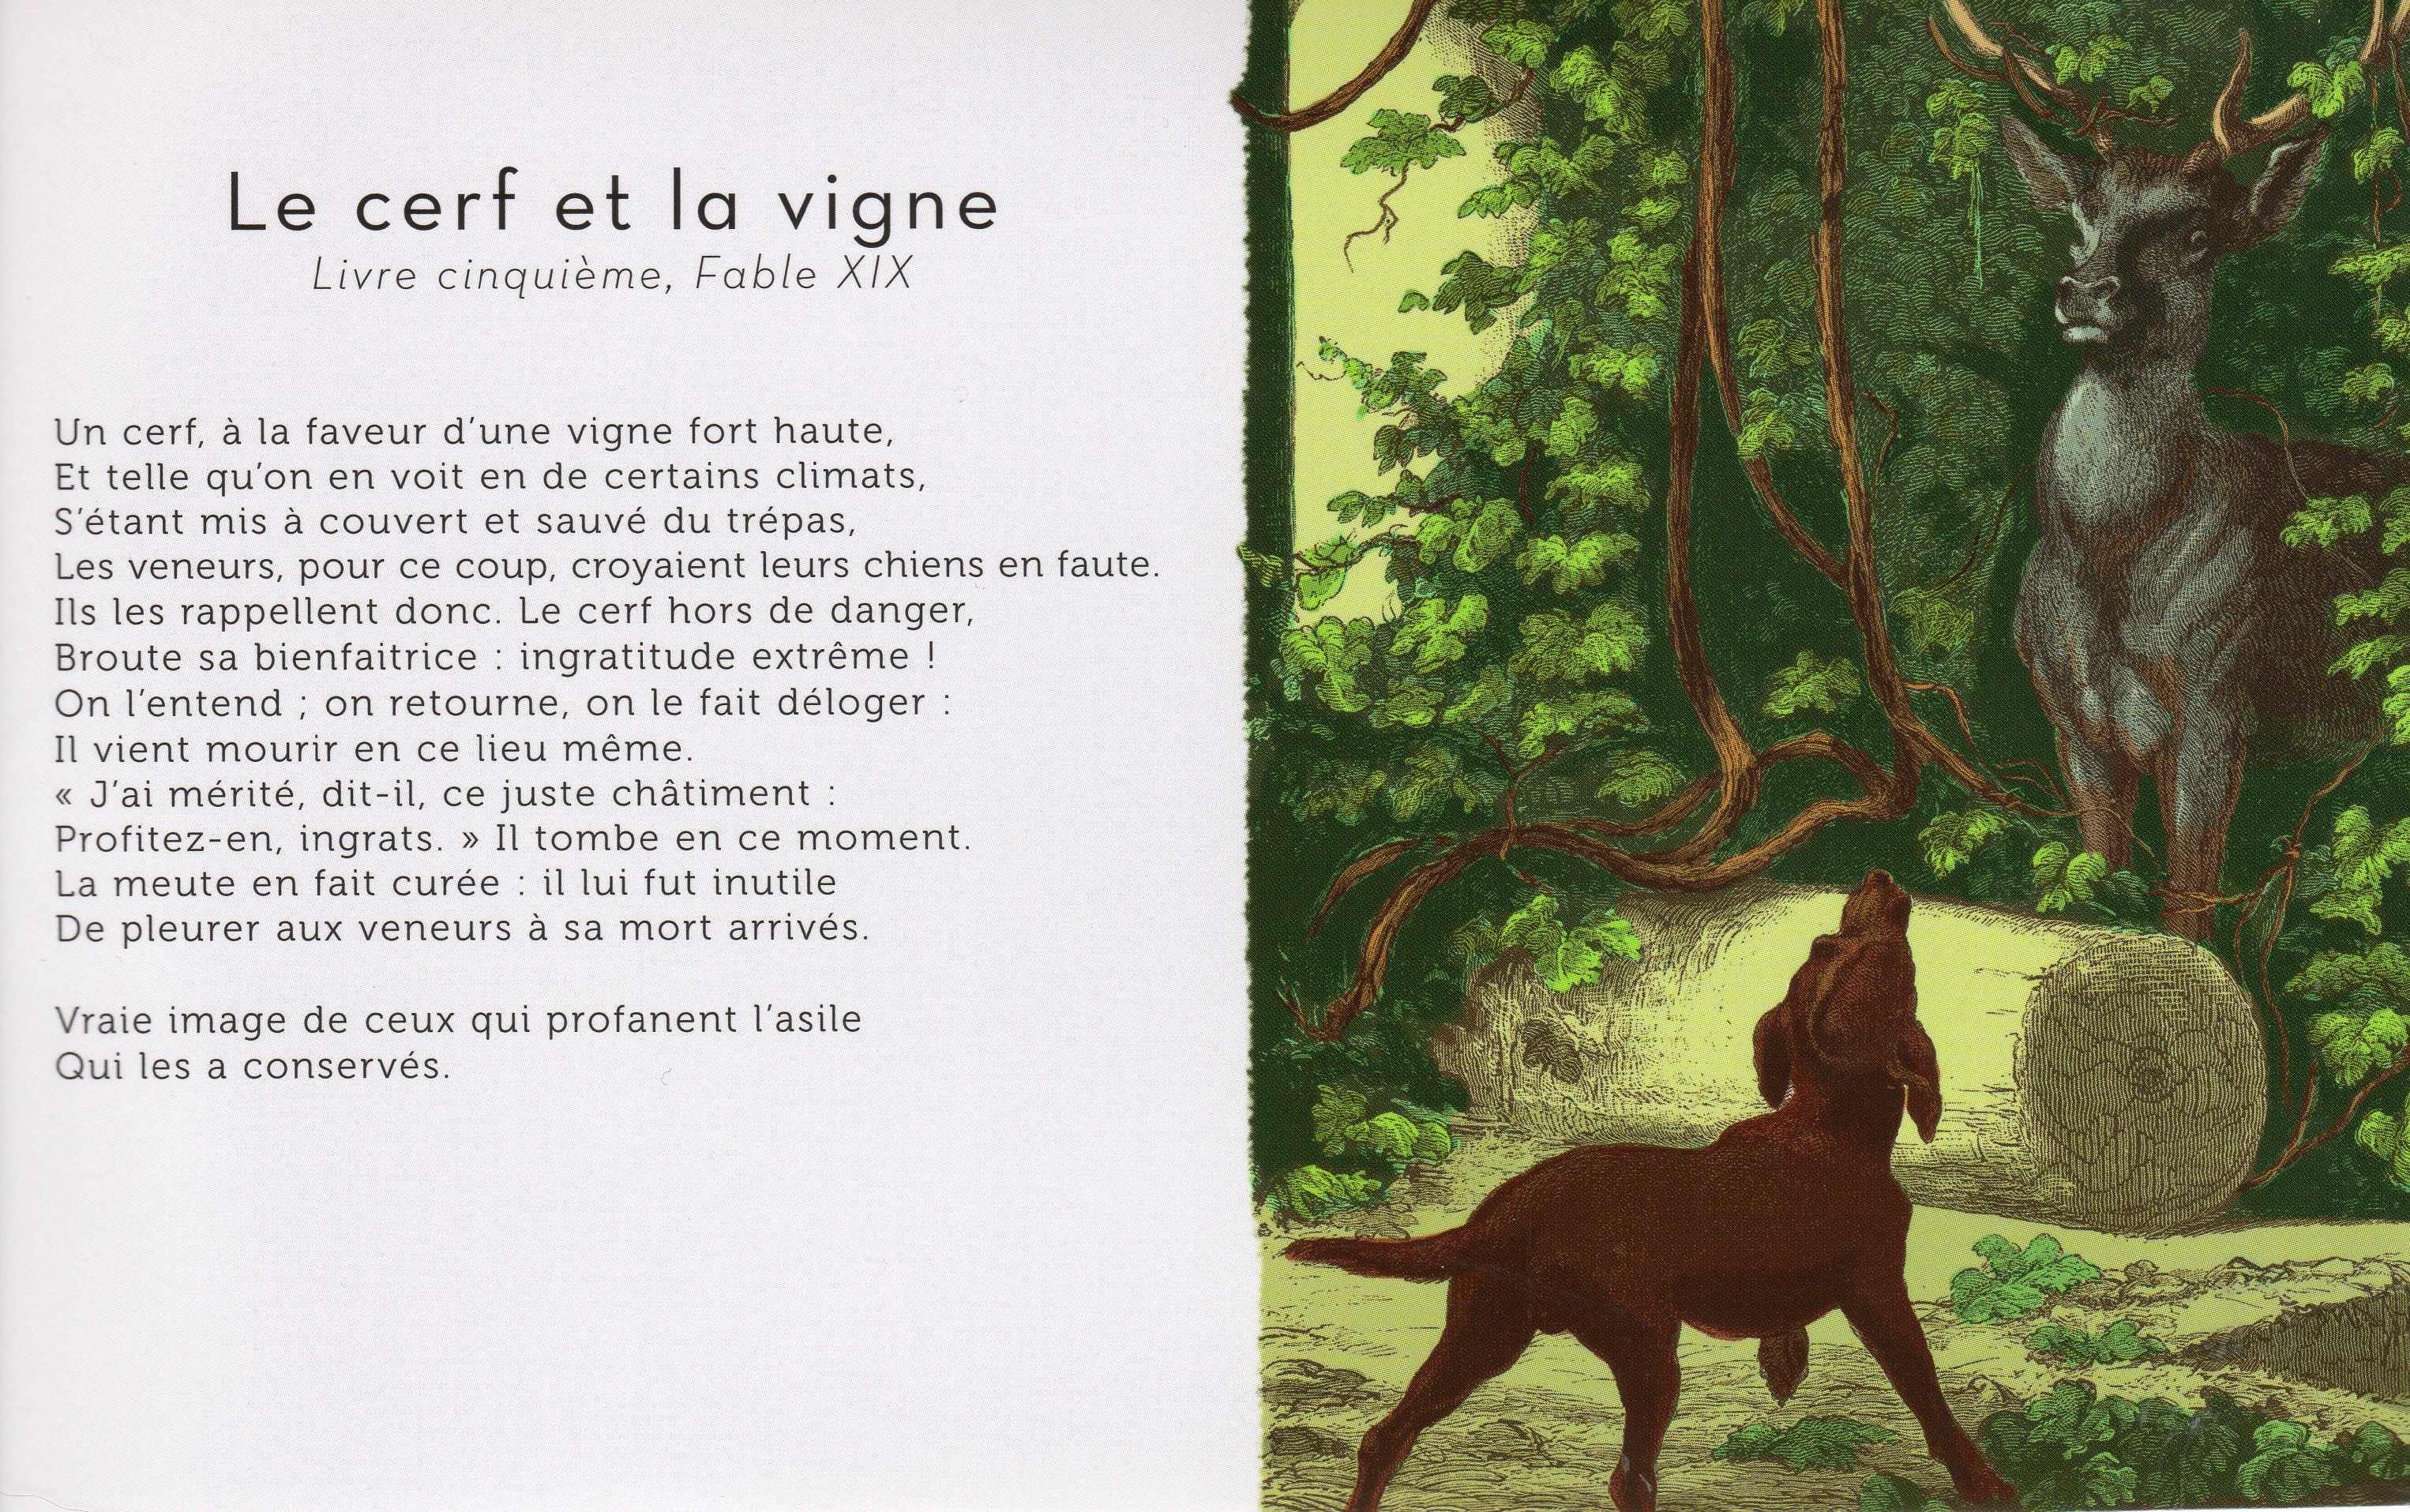 "Le cerf et la vigne" Jean De La Fontaine